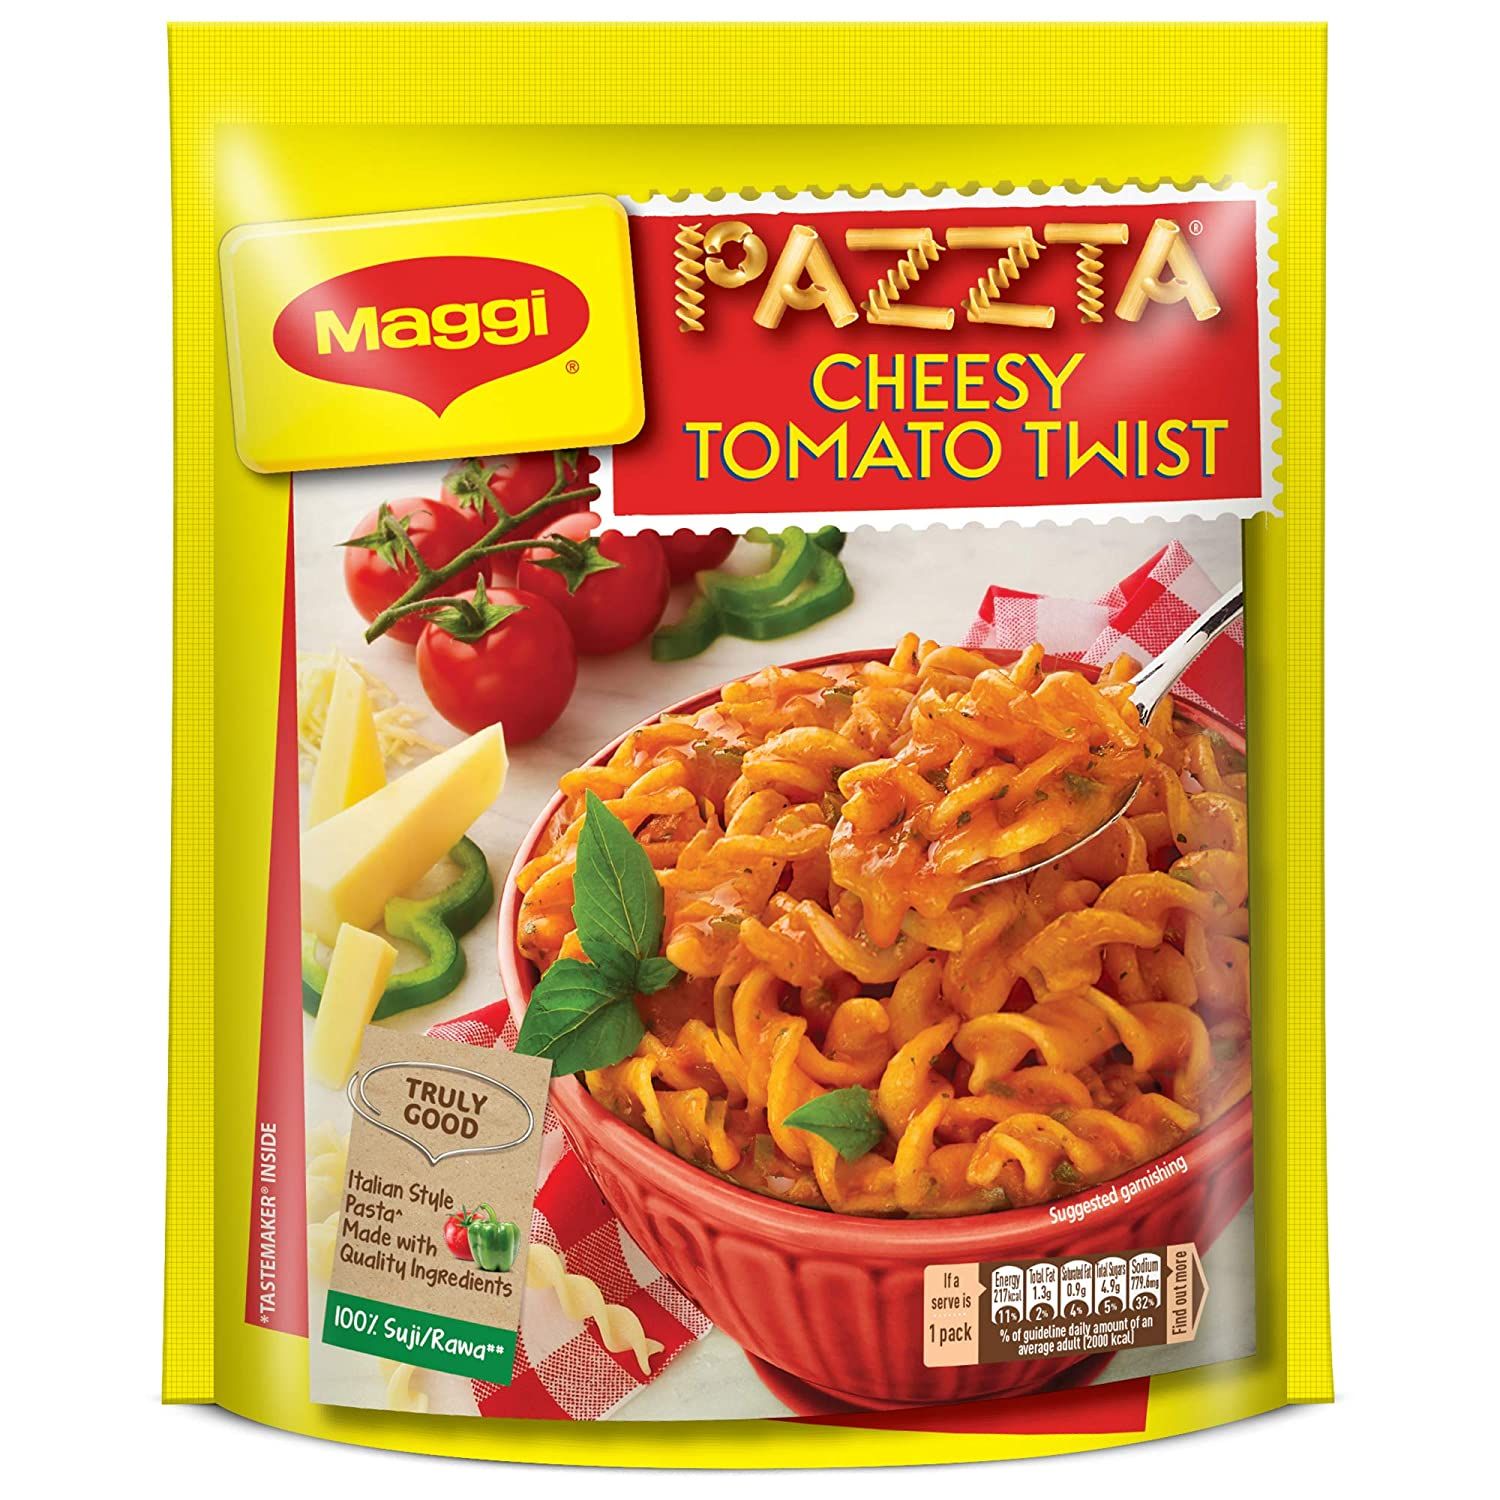 Maggi Pazzta Instant Pasta Cheesy Tomato Twist Image